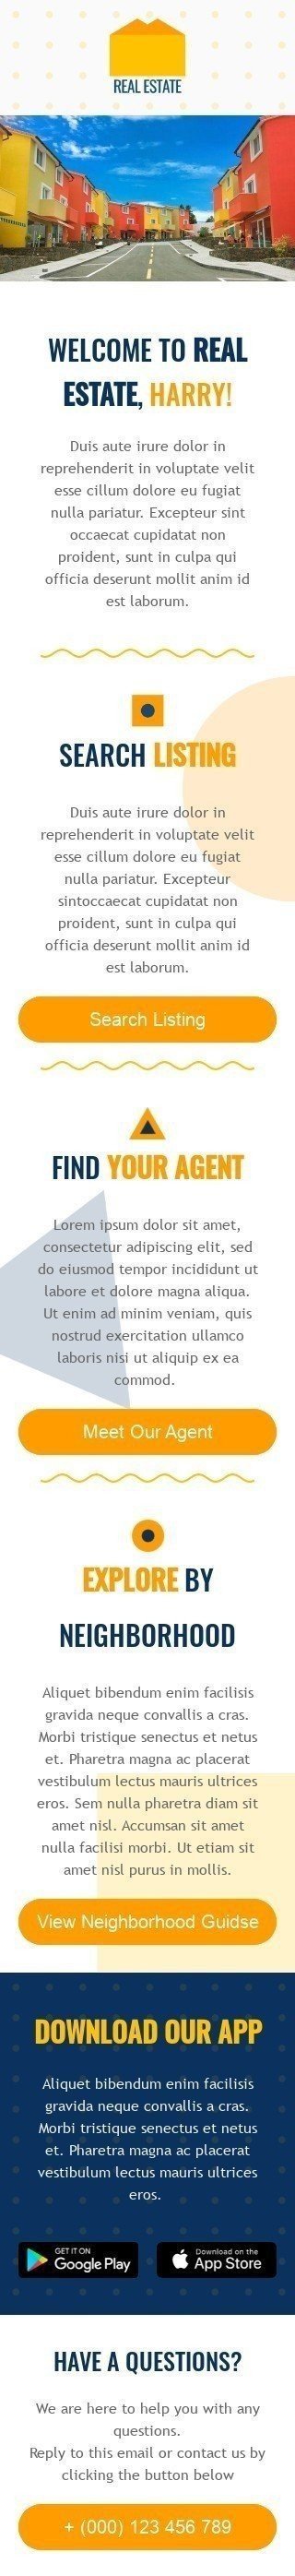 Willkommen E-Mail-Vorlage «Finden Sie Ihren Agenten» für Immobilien-Branche Ansicht auf Mobilgeräten